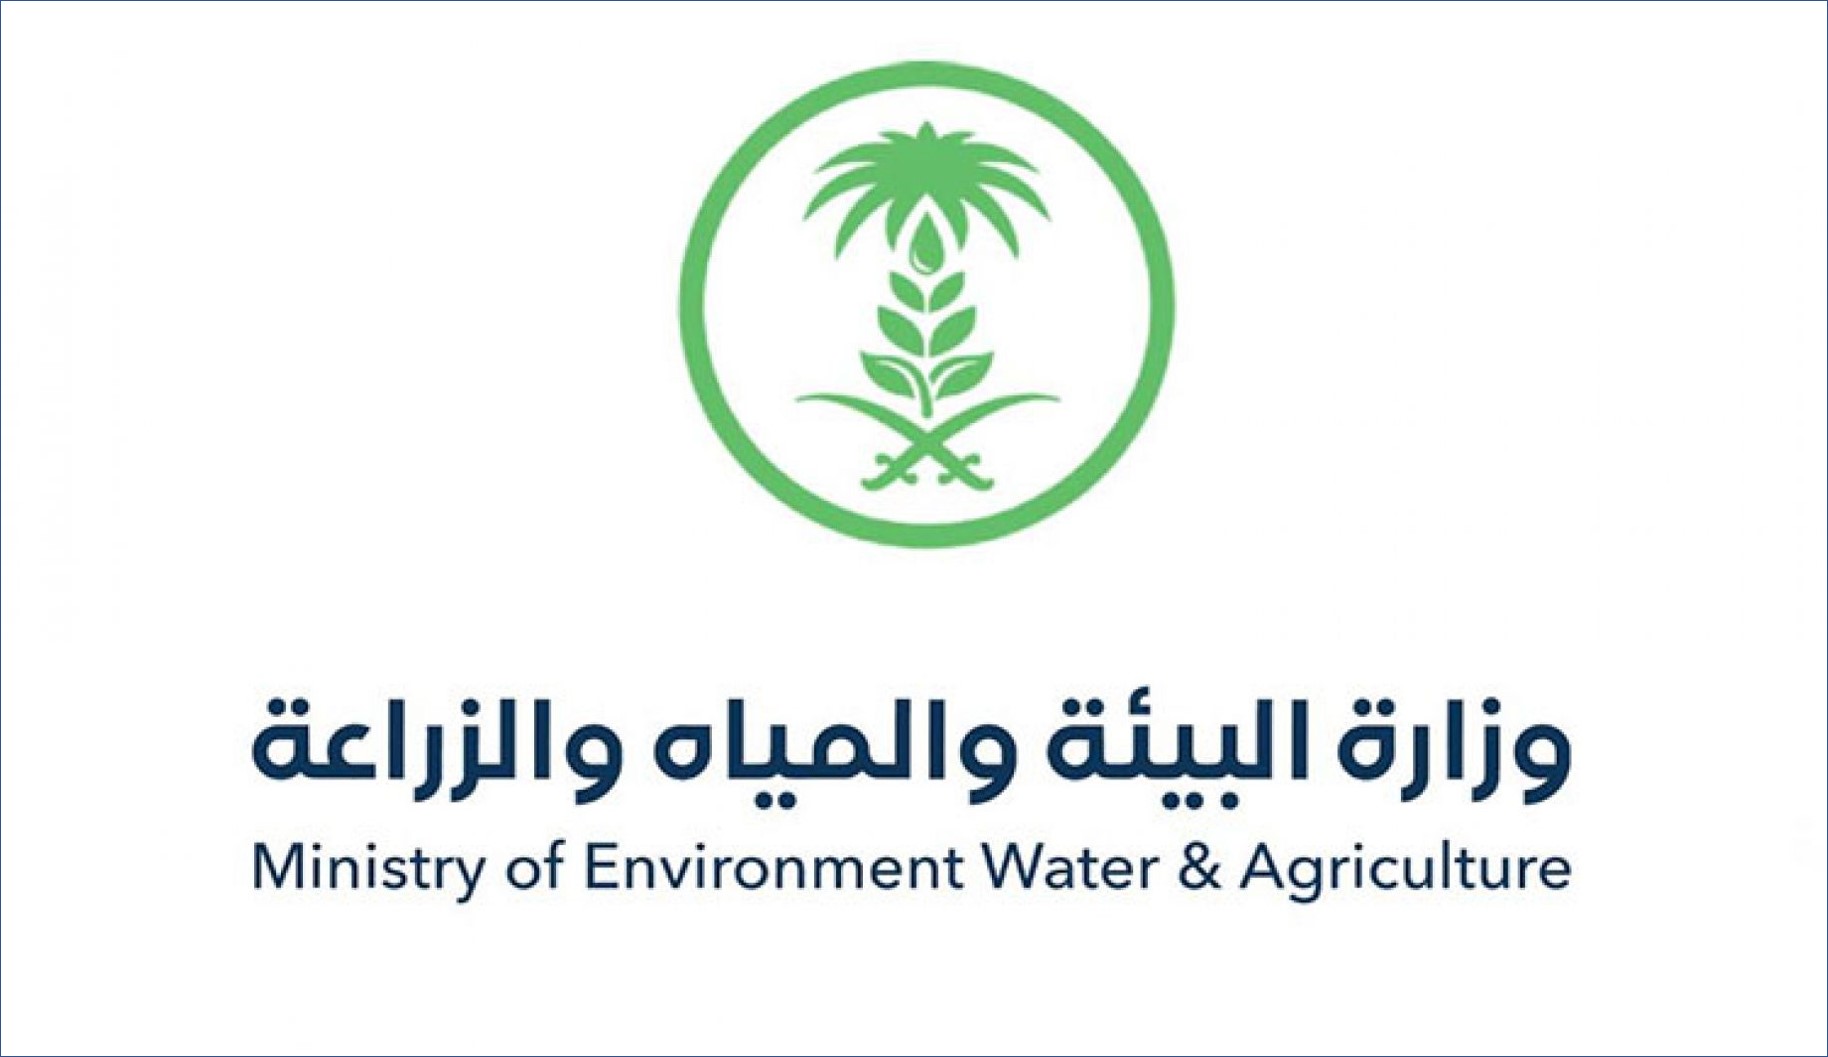 وزارة البيئة والمياه والزراعة تعلن عن 21 وظيفة للرجال والنساء